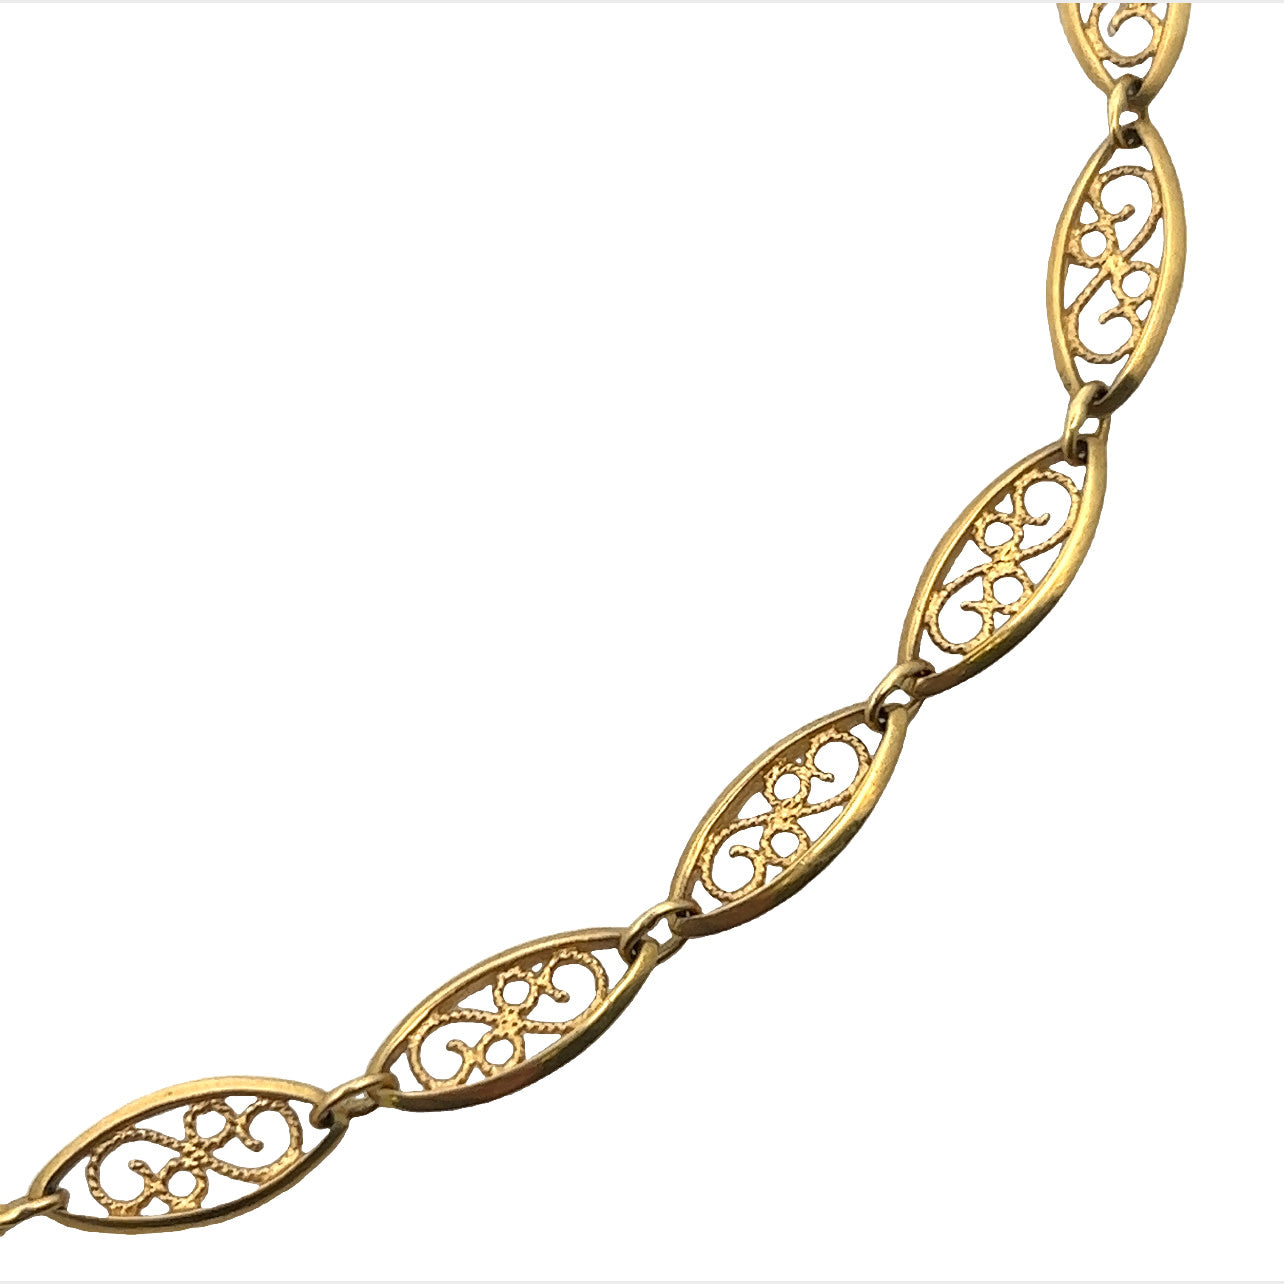 Art Nouveau 18KT Yellow Gold Necklace close-up details